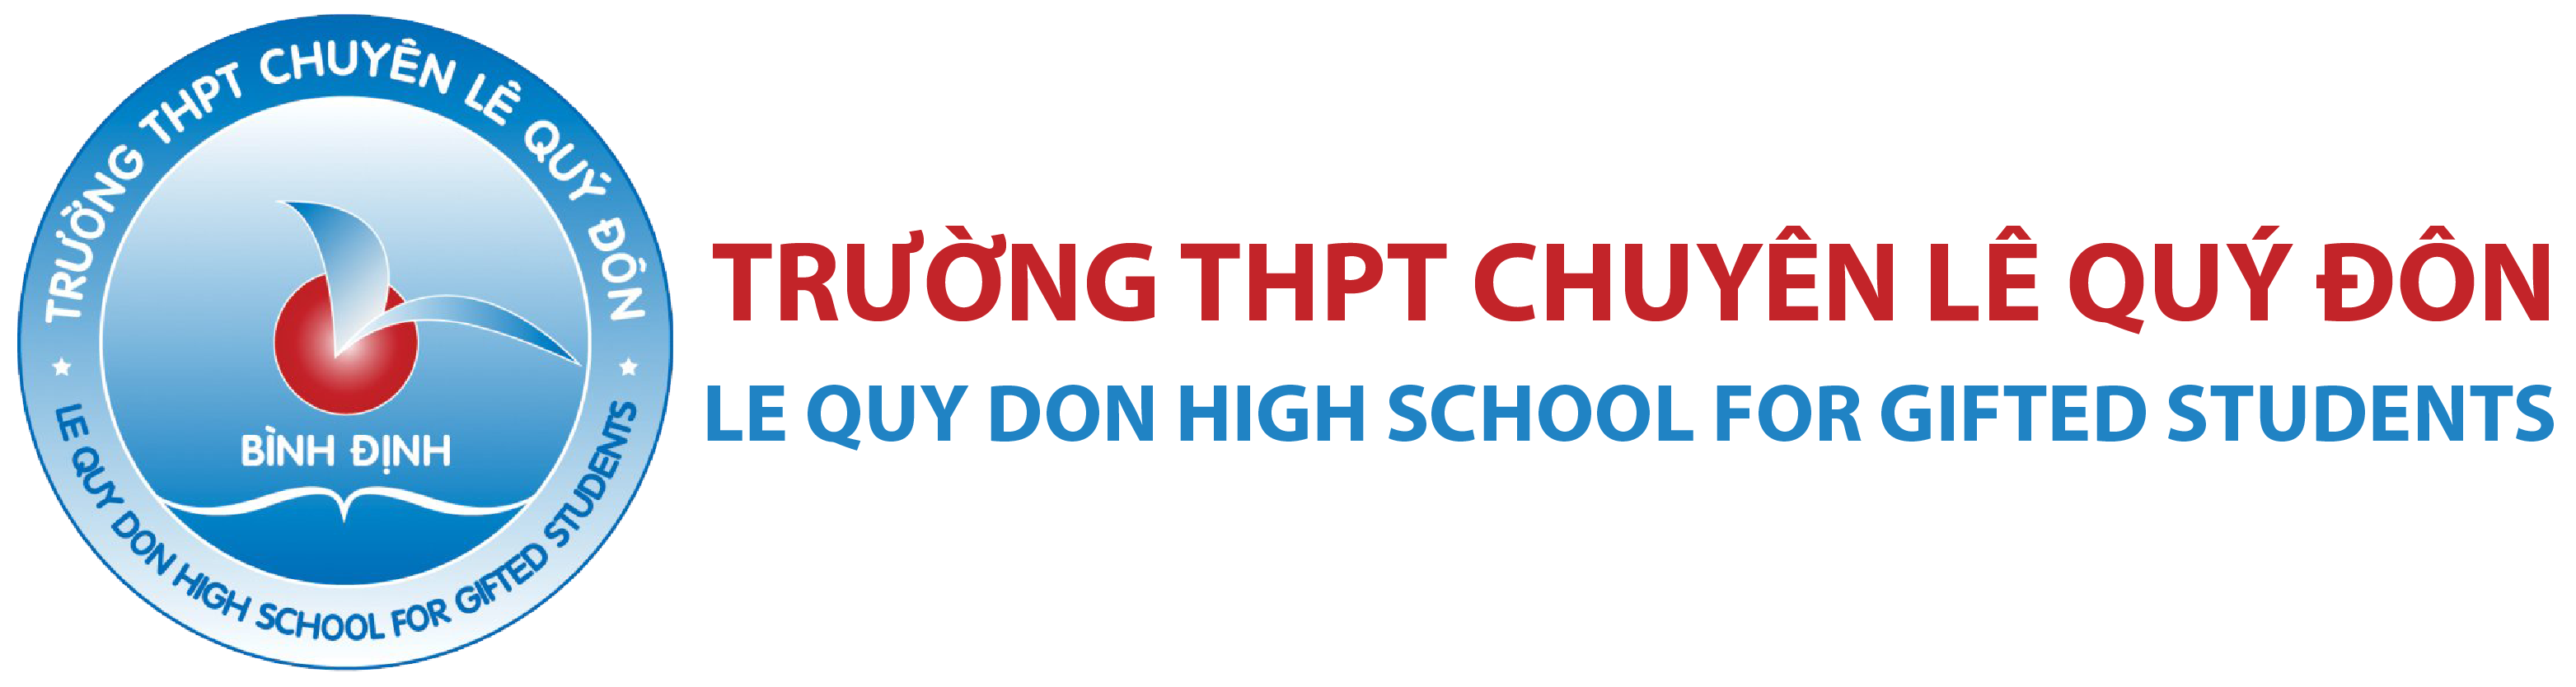 Trường THPT Chuyên Lê Quý Đôn – Bình Định